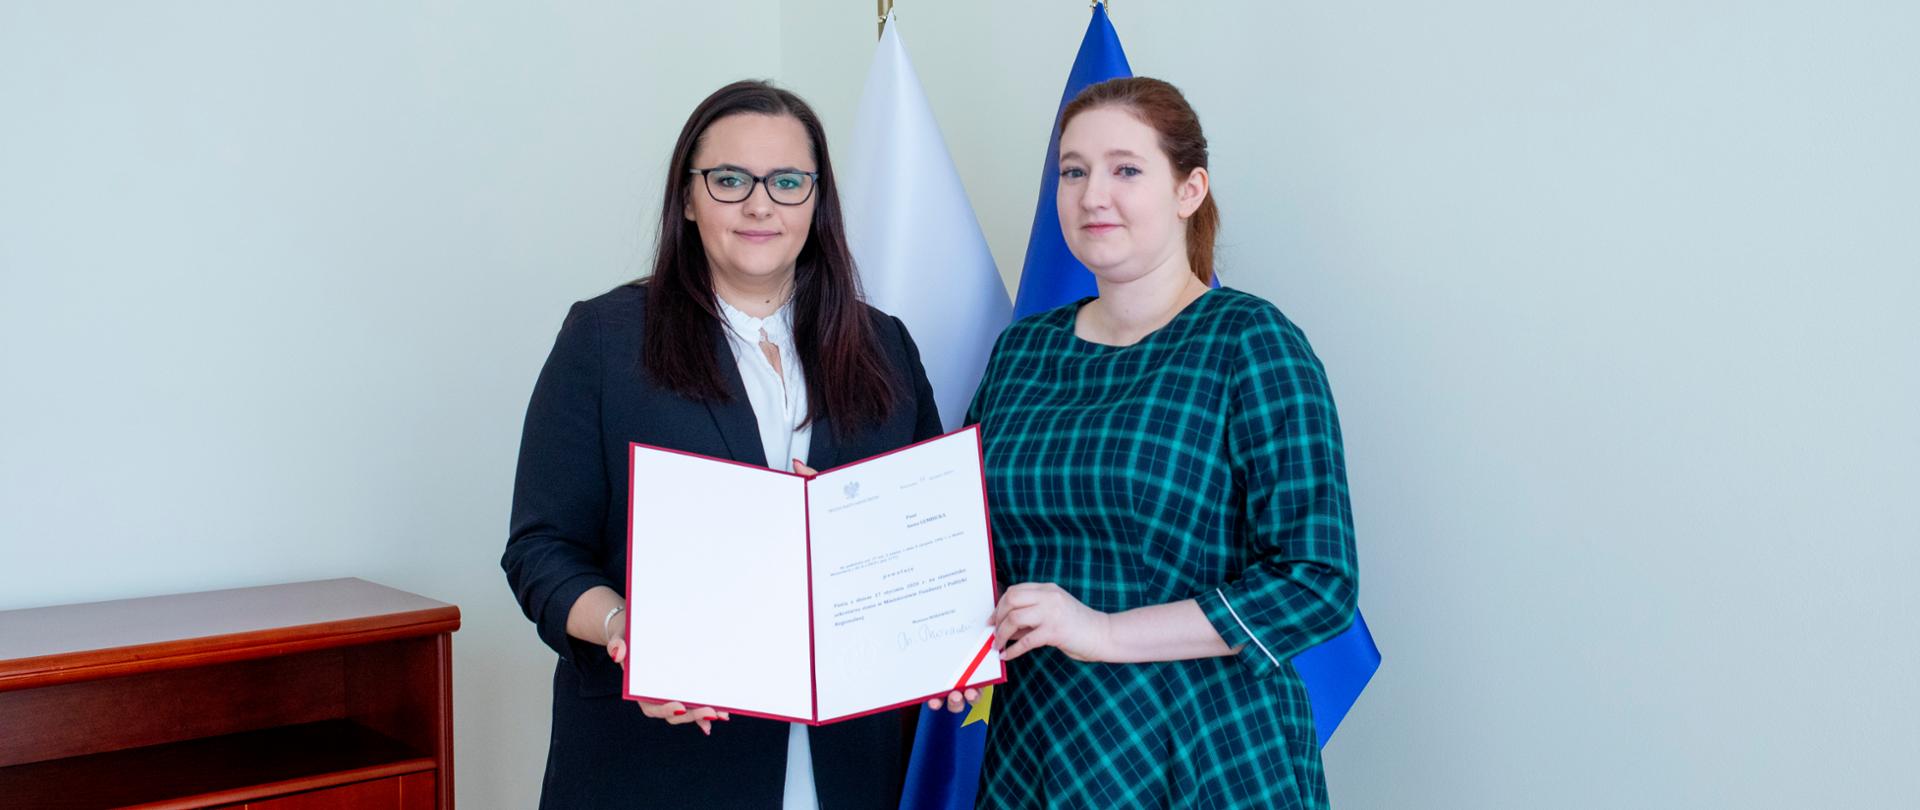 minister Małgorzata Jarosińska-Jedynak i wiceminister Anna Gembicka trzymają nominację, za nimi flagi Polski i Unii Europejskiej